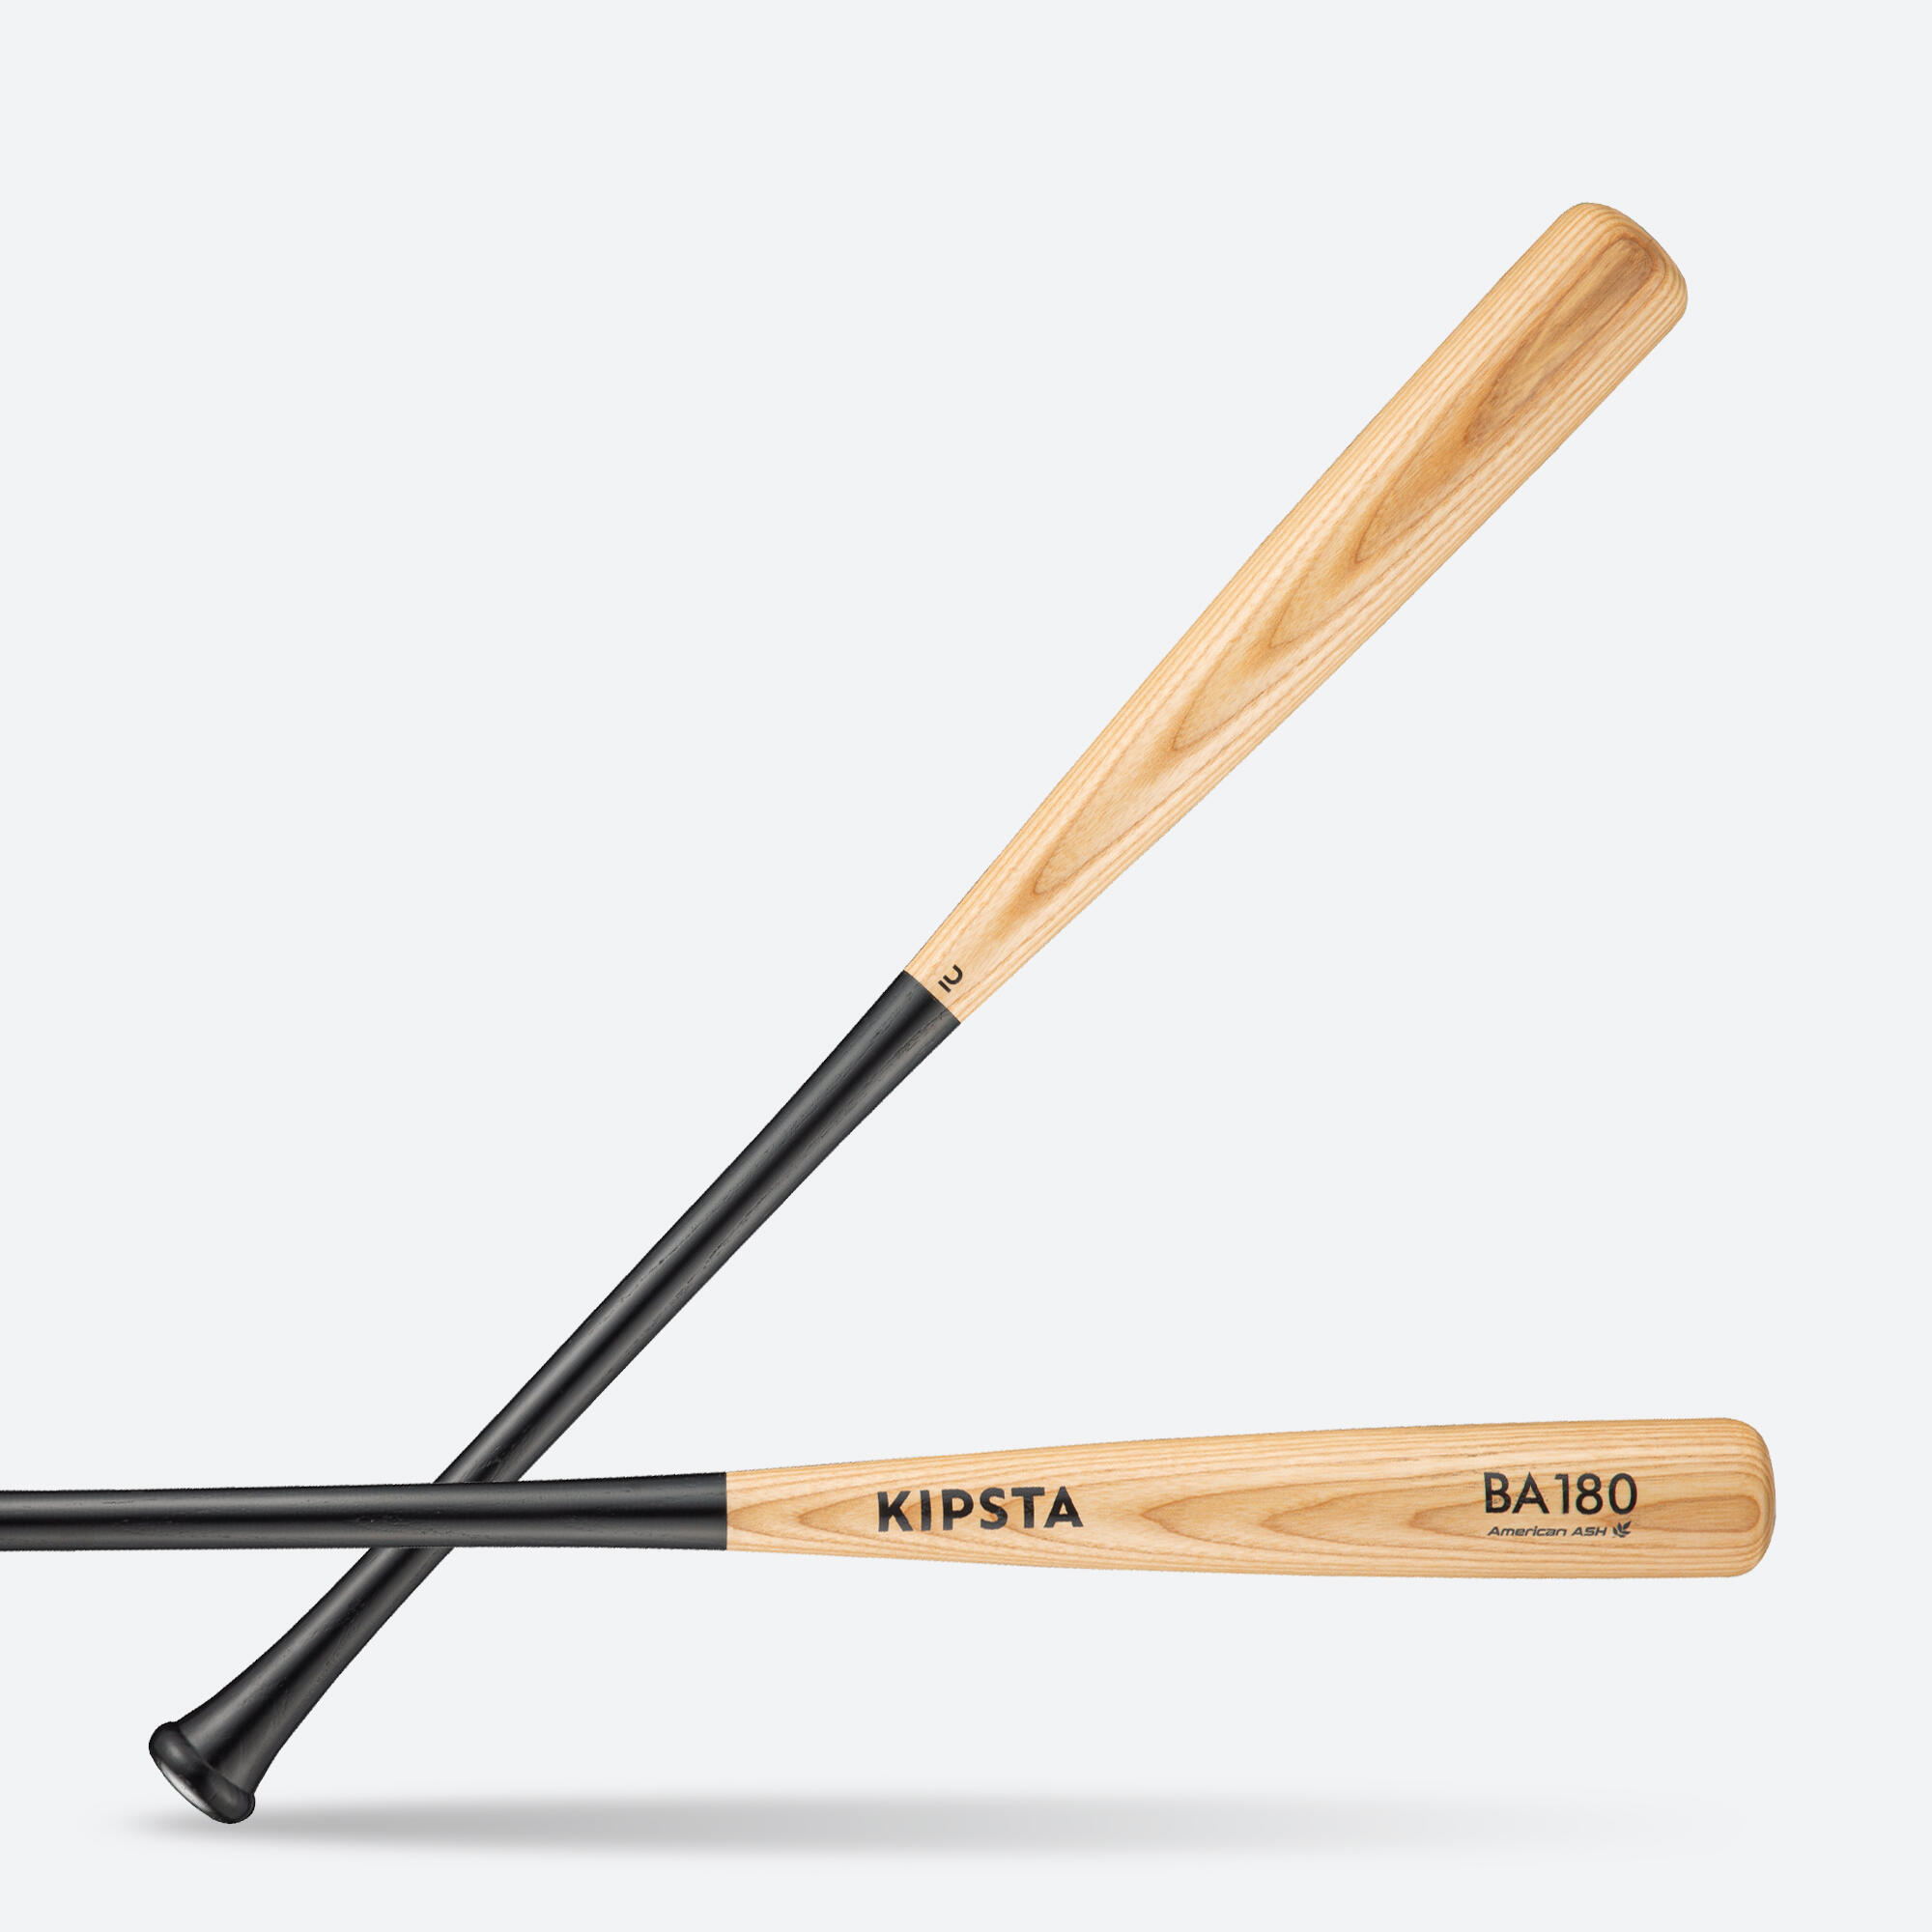 Bâtă de baseball BA180 din lemn de frasin 2022 30″/33″ 2022